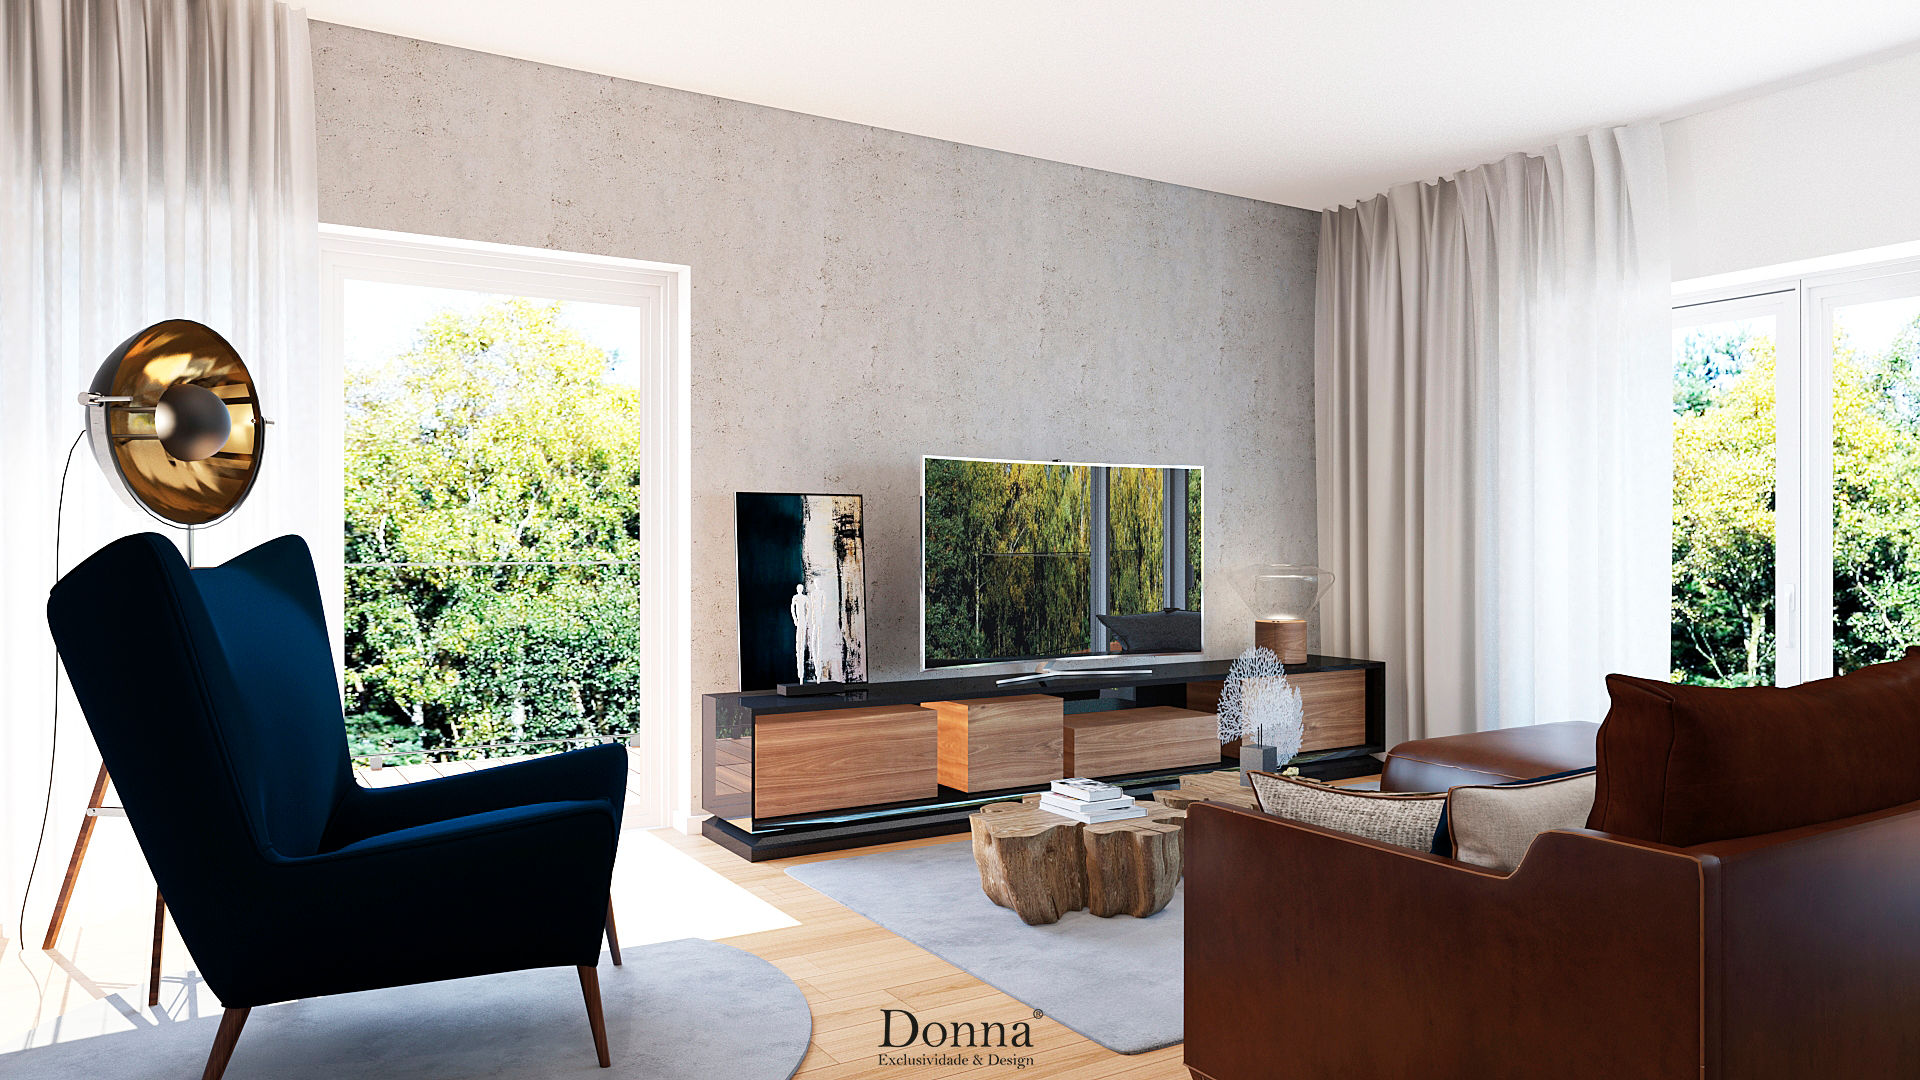 Apartamento Lisboa , Donna - Exclusividade e Design Donna - Exclusividade e Design Living room